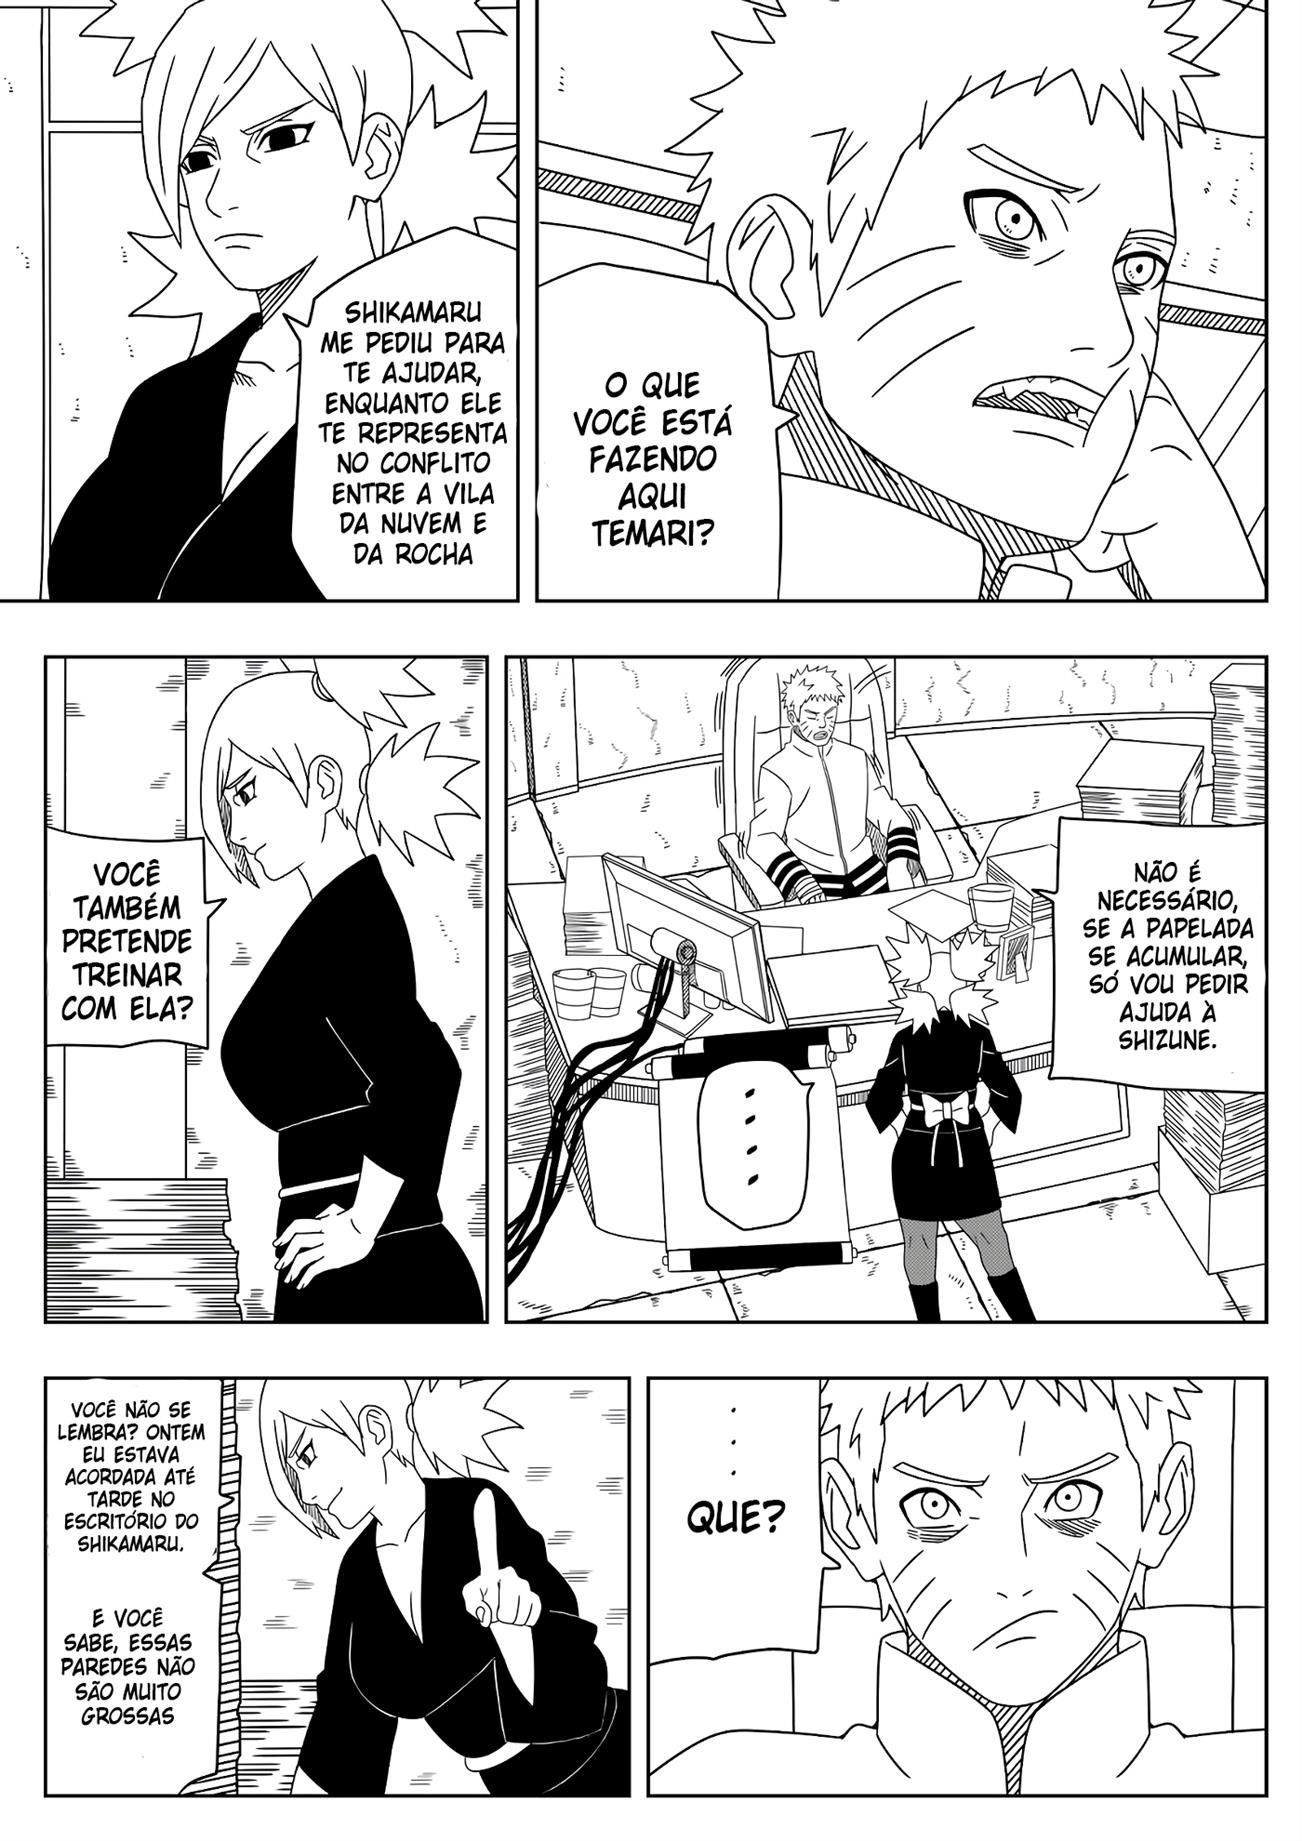 O desejo de Naruto